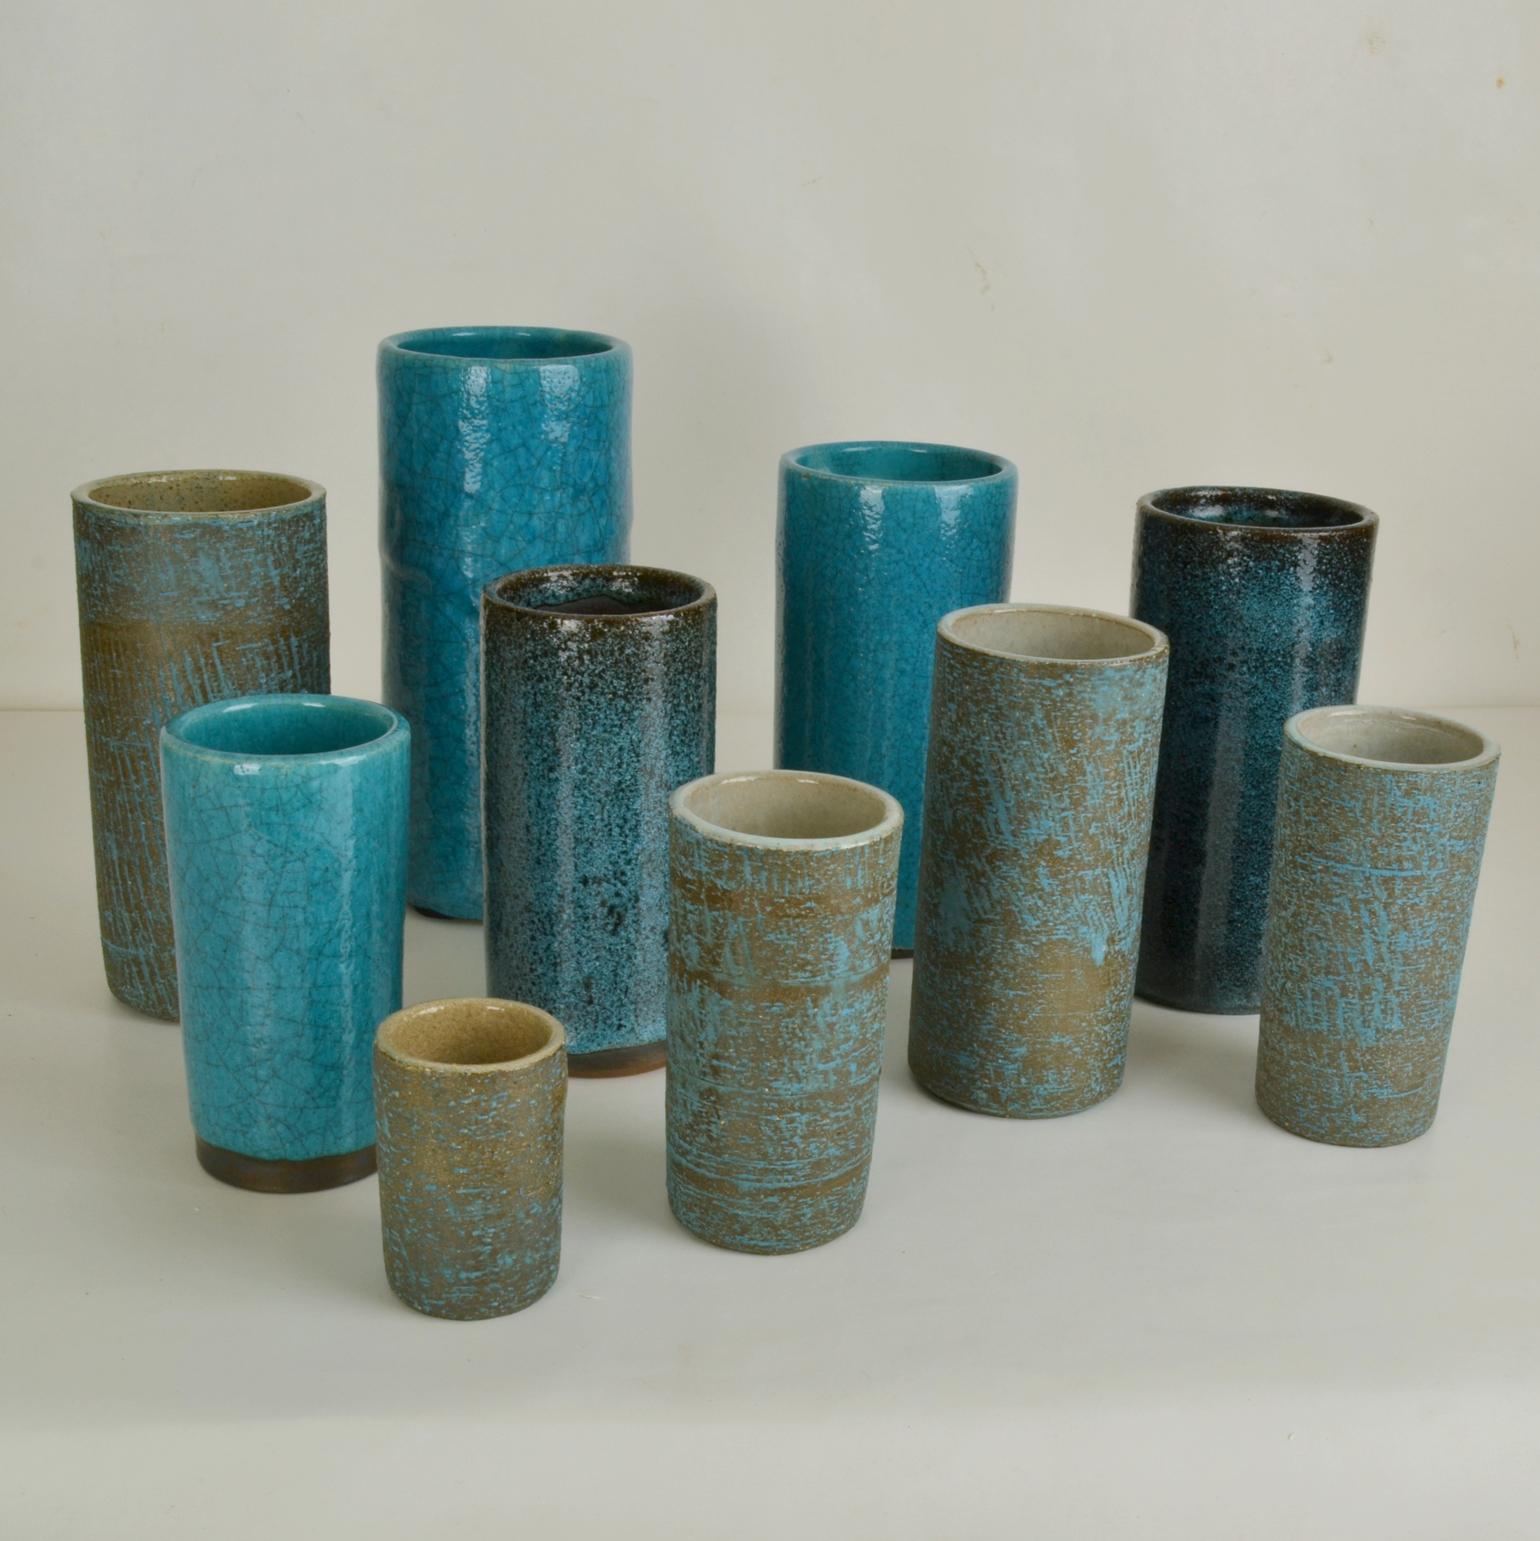 Un ensemble de dix vases cylindriques en céramique de studio de différentes hauteurs dans des tons turquoise créés dans 3 glaçures différentes produites dans les années 1960. 
Pieter Groeneveldt ((1889-1982), né à Batavia, dans les anciennes Indes